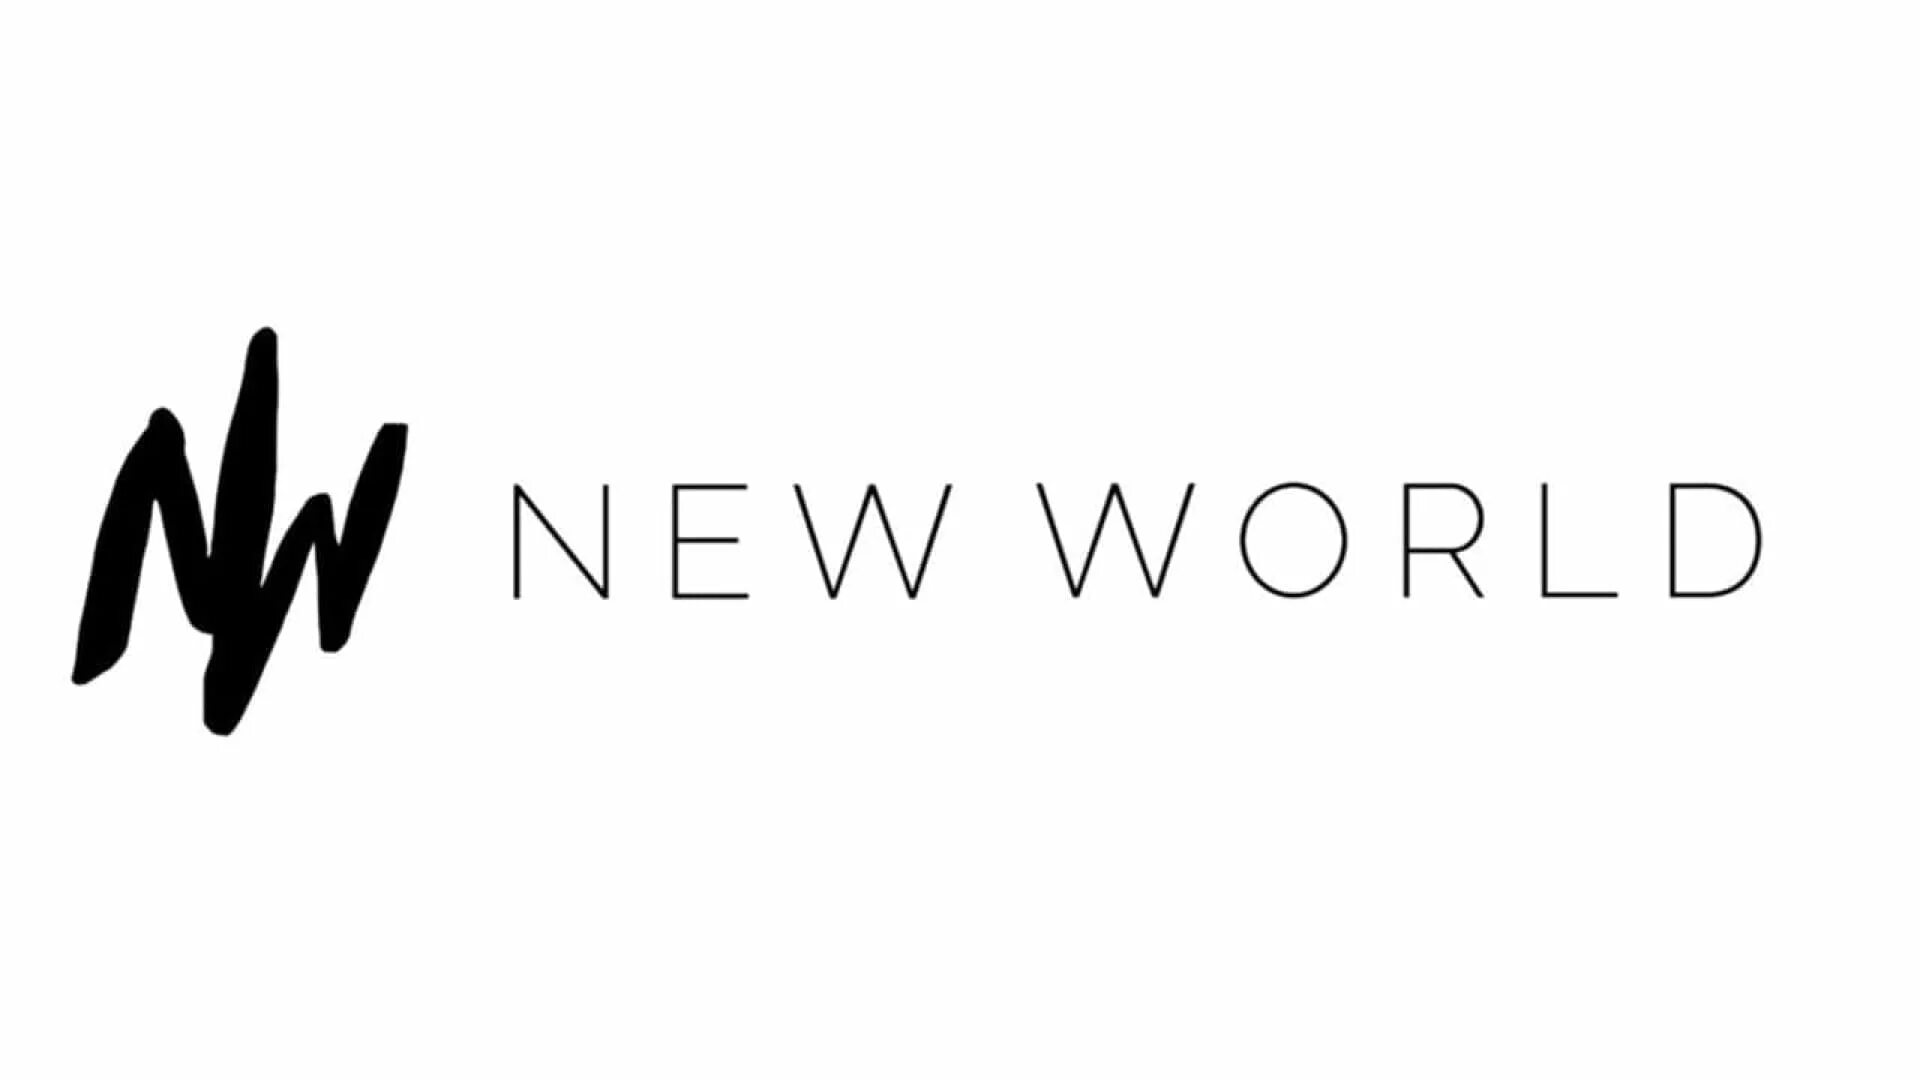 New World logo. Логотип игры New World. New World interactive. Wor(l)d лого. Animate world